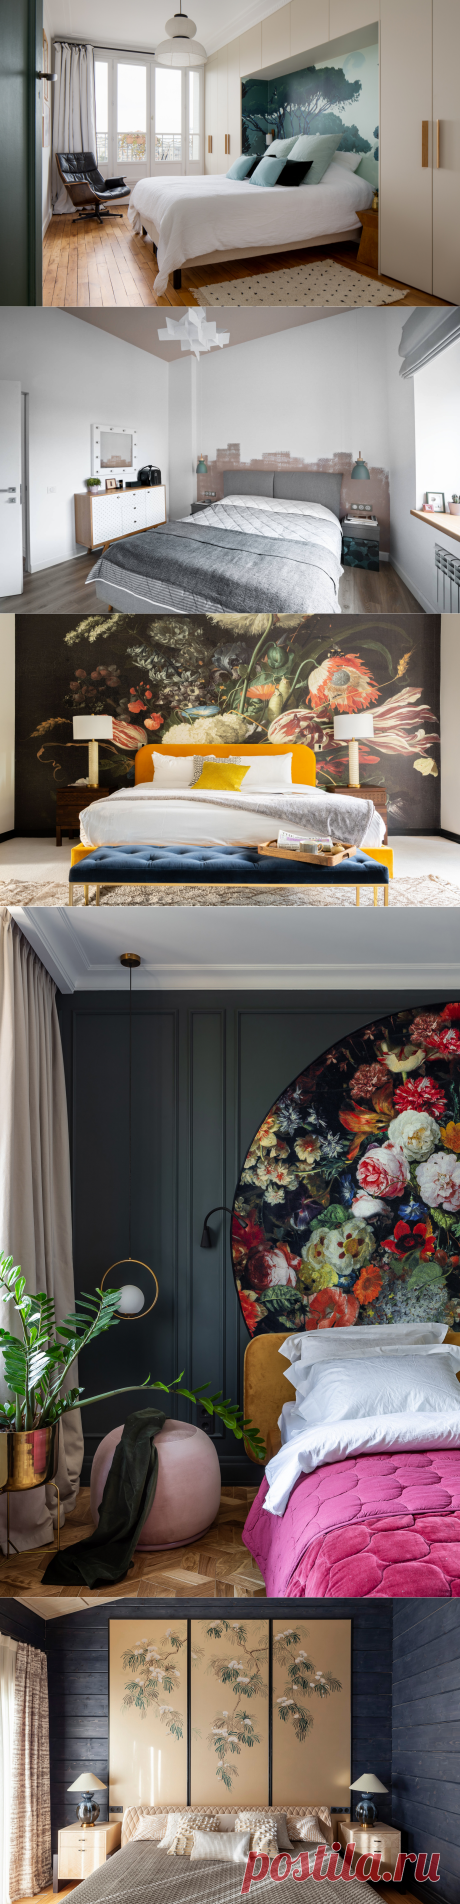 Дизайн стен в спальне (16 фото), варианты отделки, декора и оформления стен в спальне | Houzz Россия